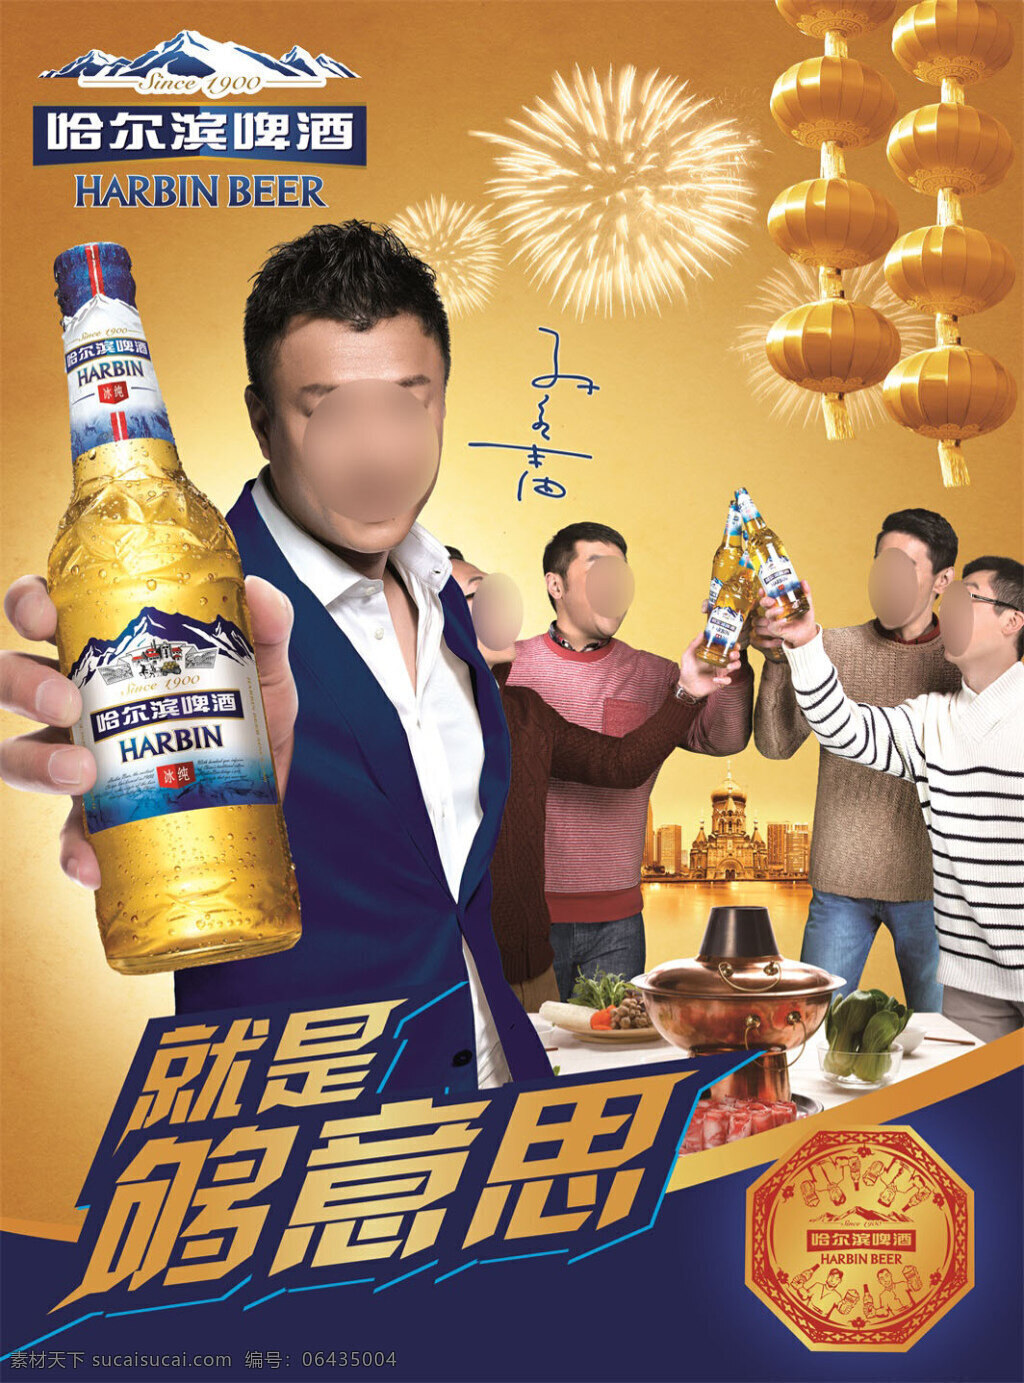 孙红雷 代言 哈尔滨 啤酒 聚会 版 海报 哈尔滨啤酒 广告 蓝上衣 右手拿瓶 背景 朋友聚会 烟花 灯笼 黄底 就是够意思 黄色